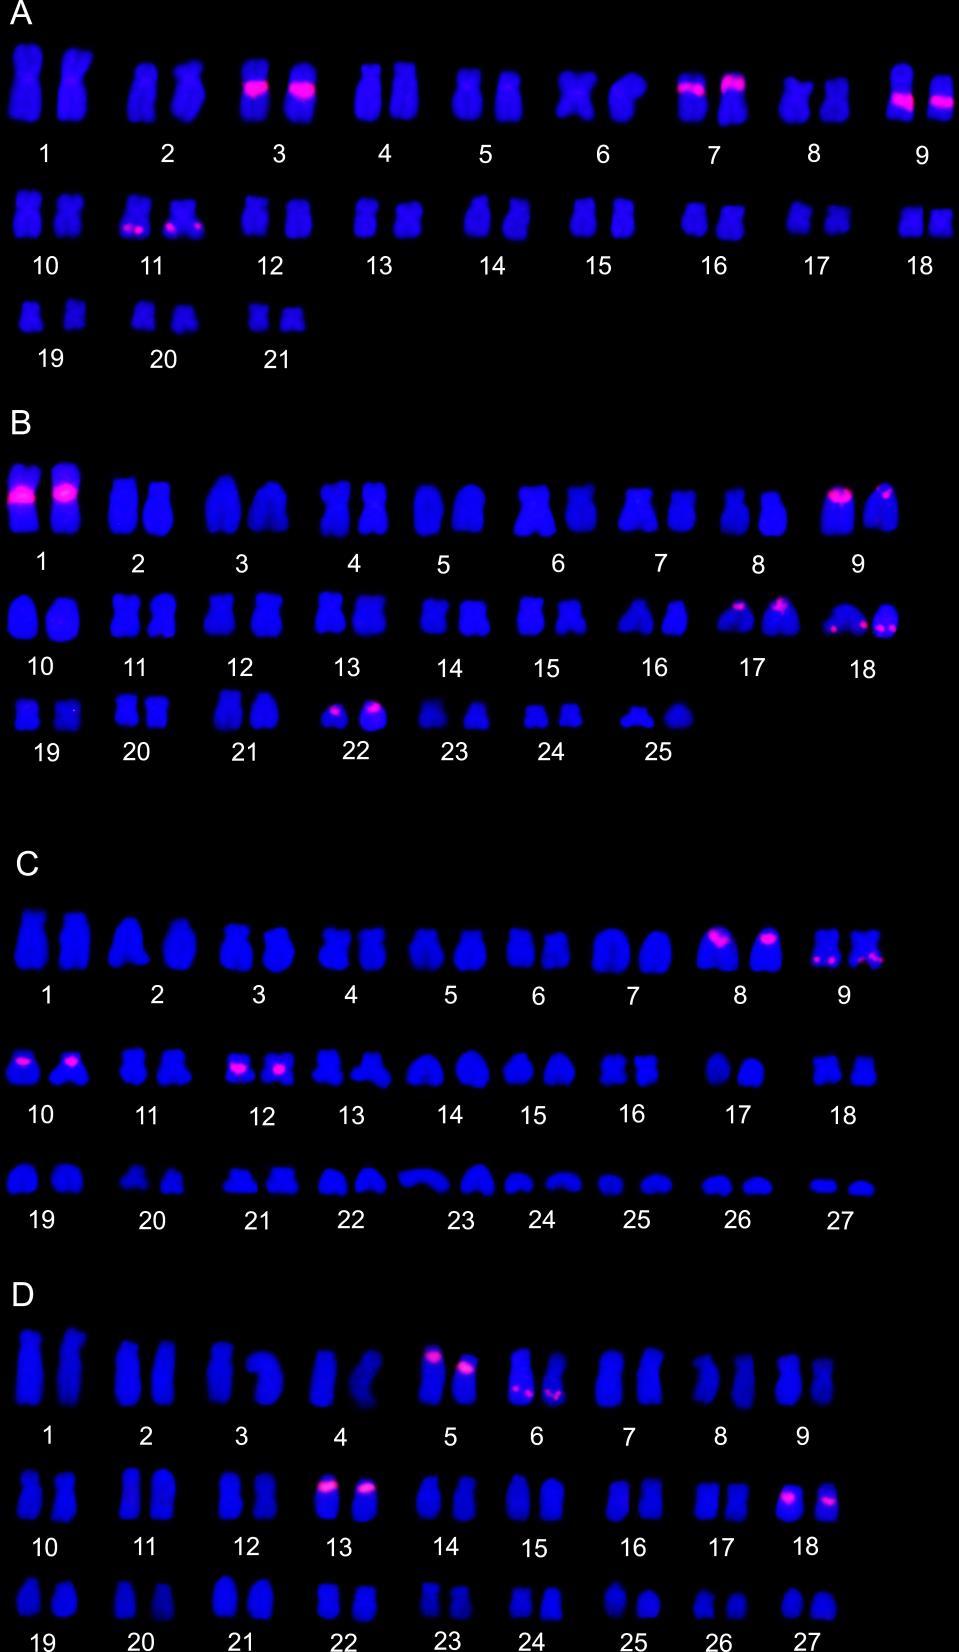 32 Figura 7. Cariótipos das quatro espécies estudadas com marcações de DNAr 5S. A: Ancistrus sp. 1 cupim 4 pares de cromossomos marcados; B: Ancistrus sp.